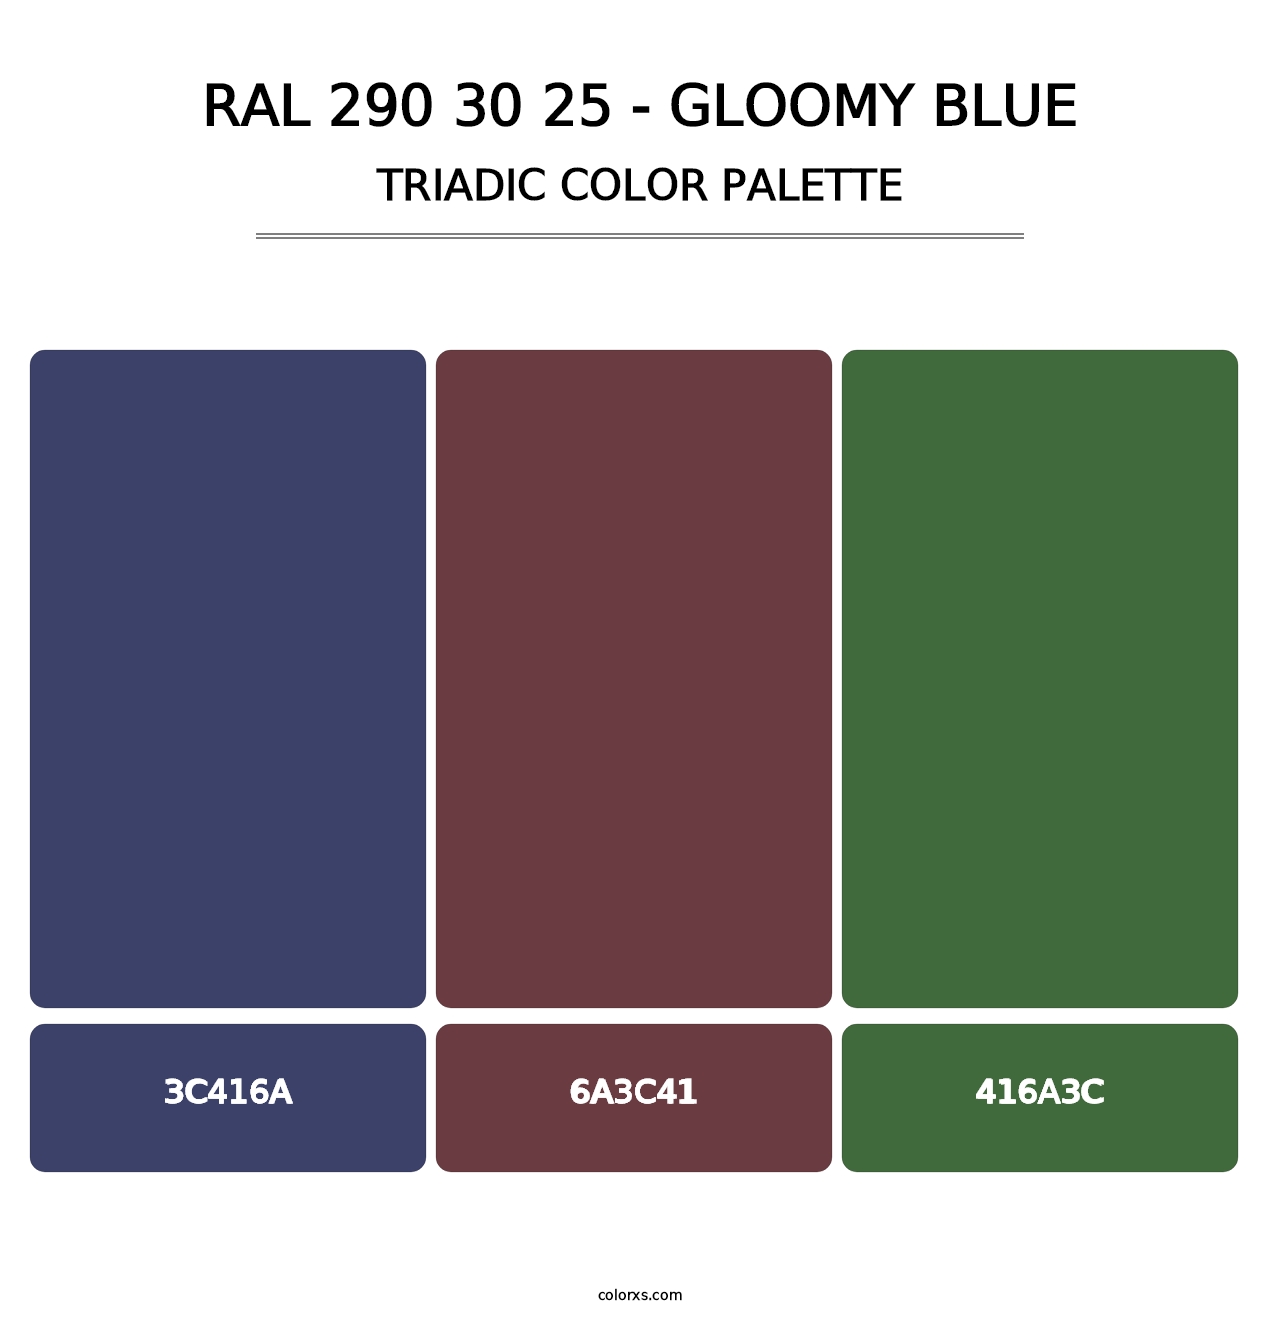 RAL 290 30 25 - Gloomy Blue - Triadic Color Palette